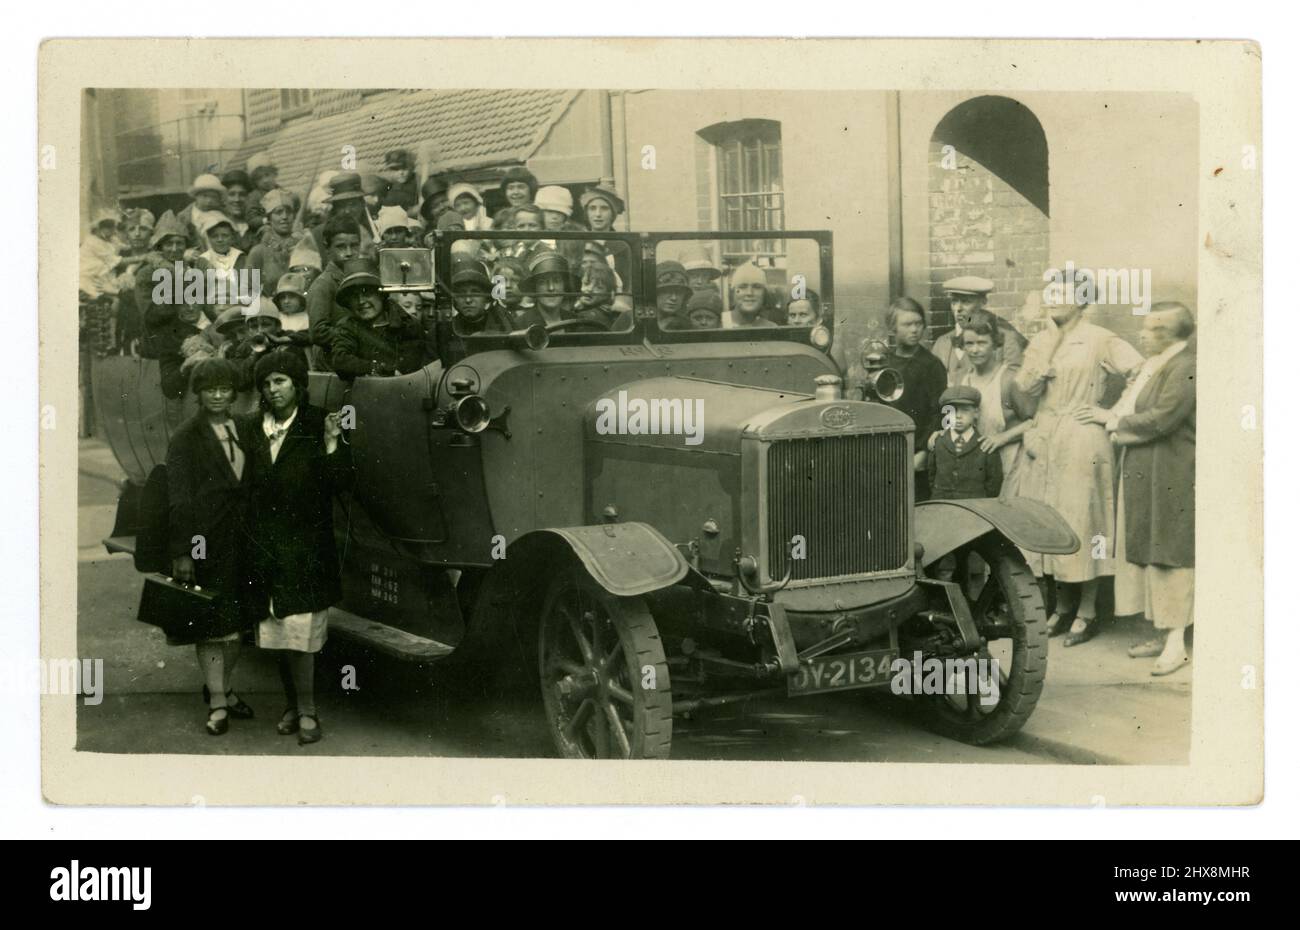 Originale 1920's cartolina charabanc, sembra essere un bambino compleanno festa, o giorno speciale fuori, come alcuni stanno portando cappelli di partito, molti bambini crammed nel charabanc, con i loro genitori, onlookers sulla strada. Brighton, Sussex, Inghilterra, Regno Unito Foto Stock